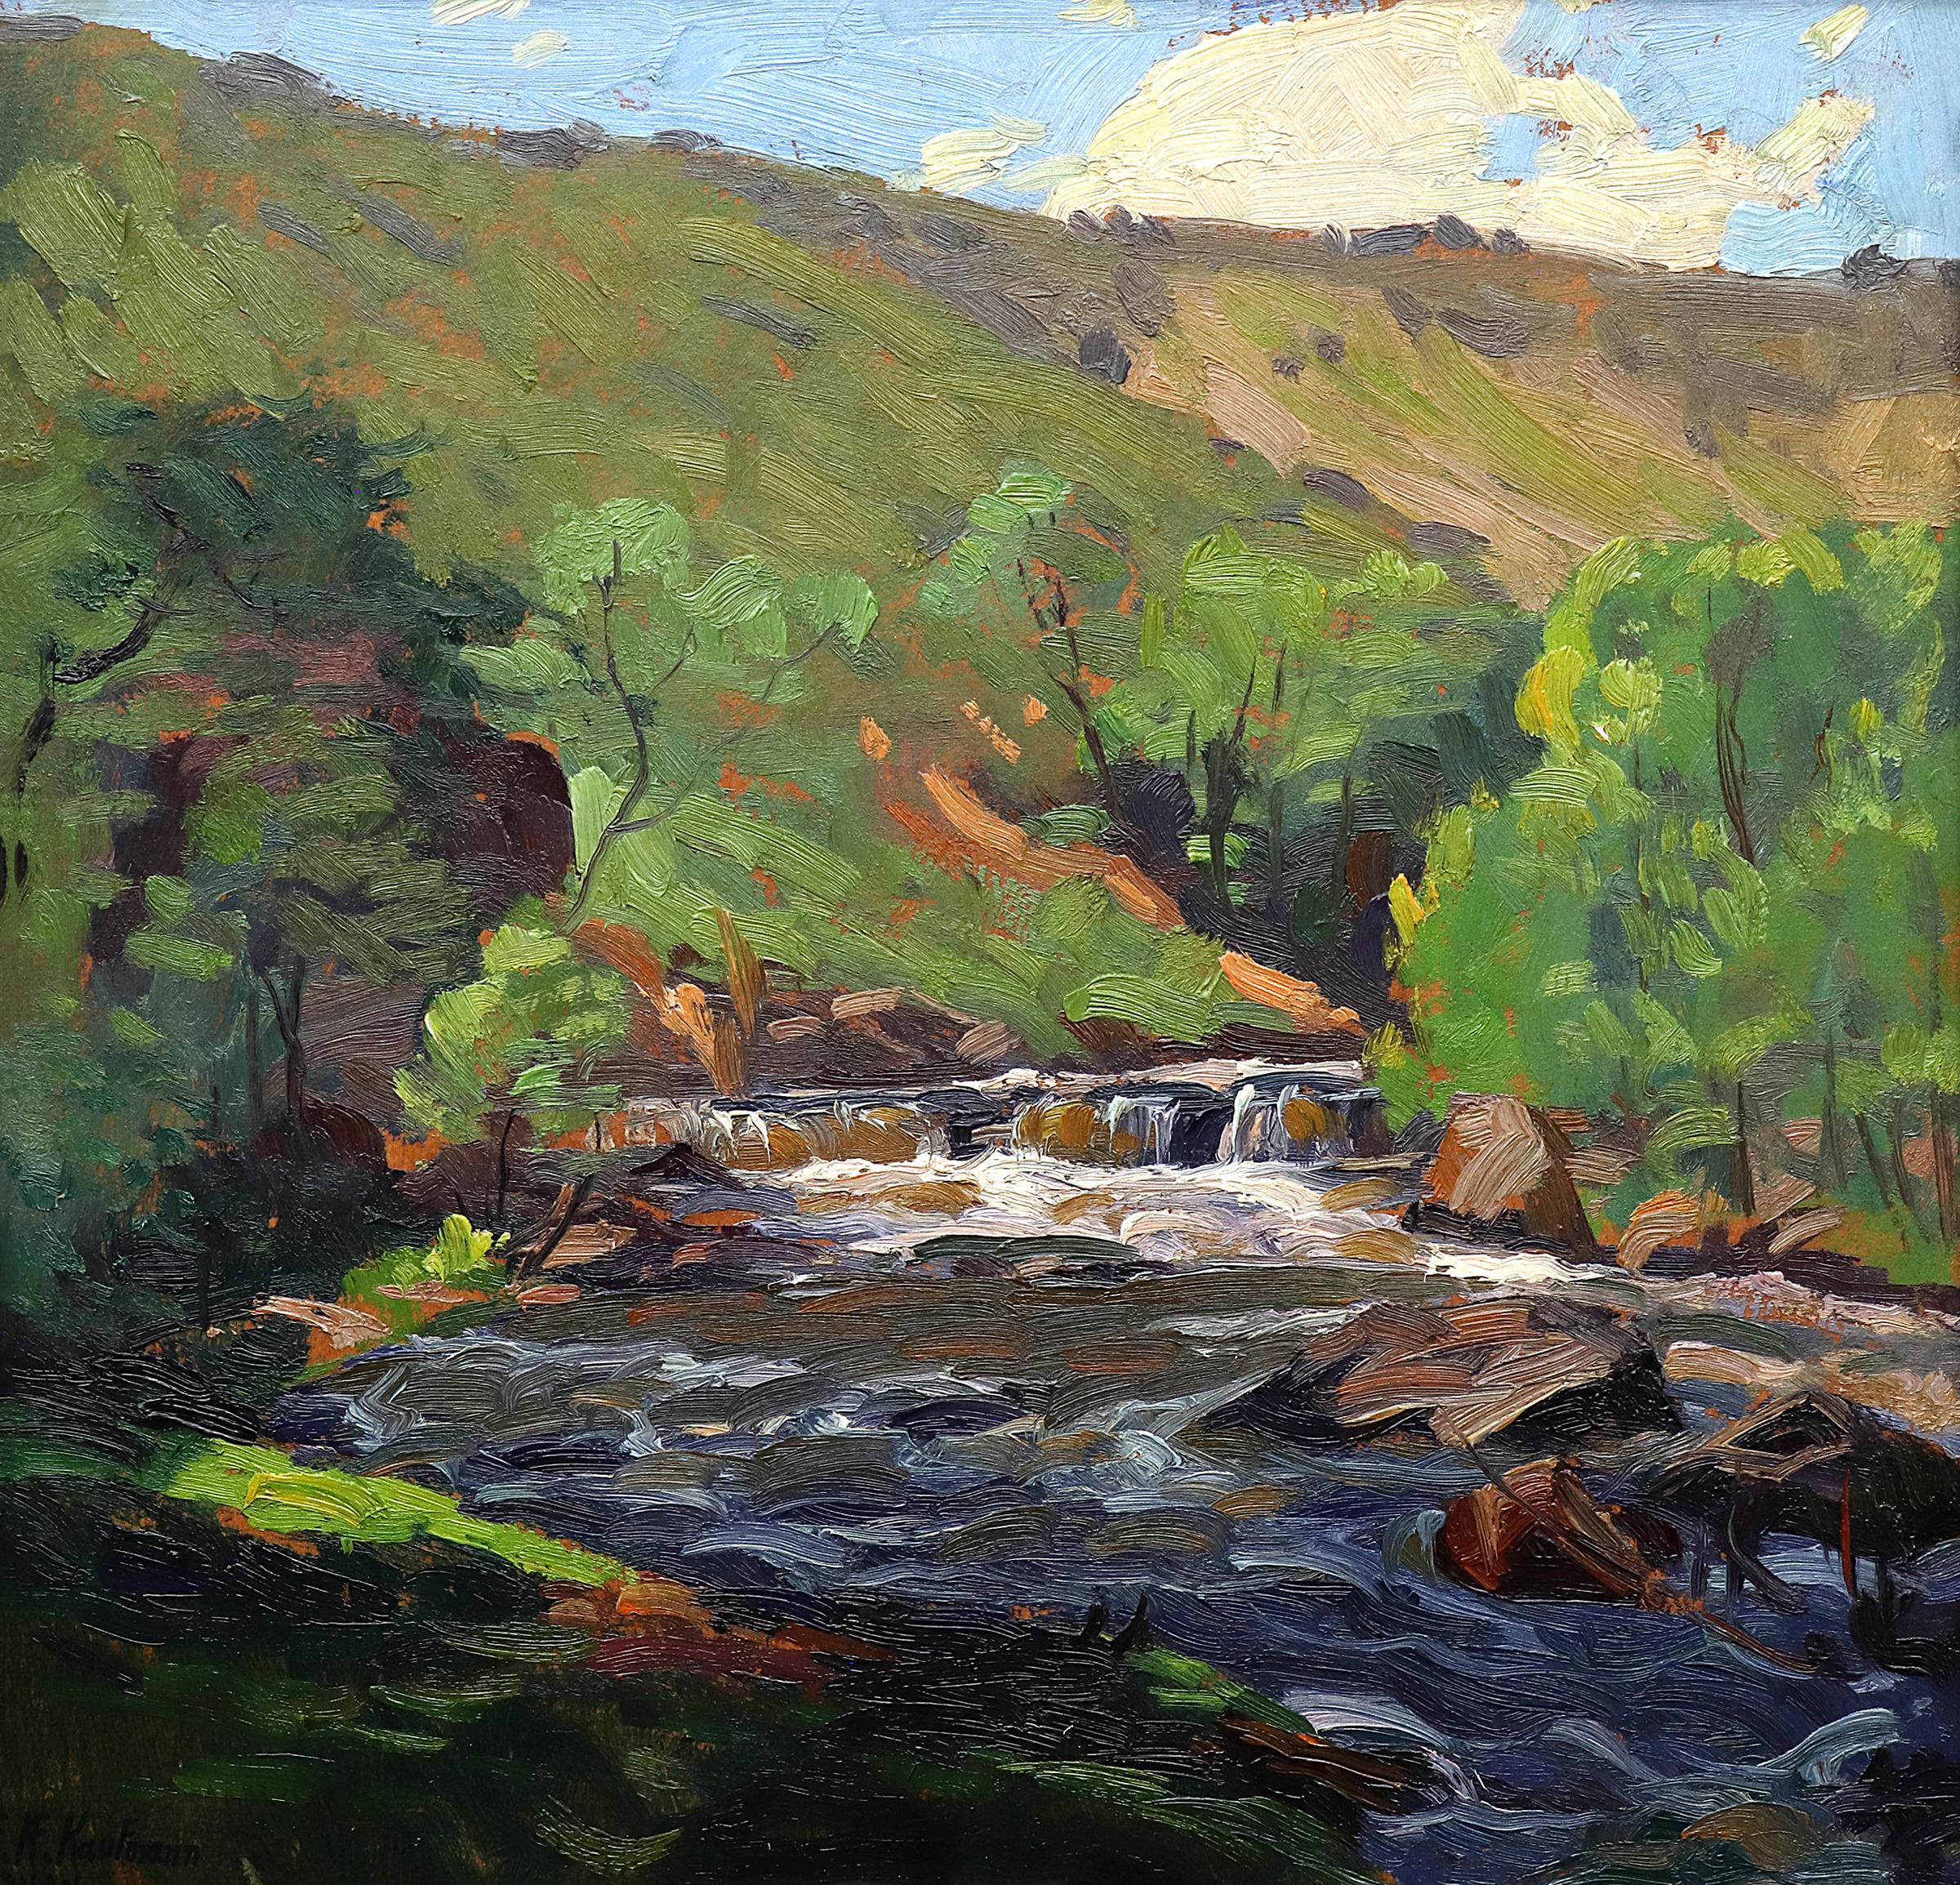 Peinture impressionniste d'un paysage de montagne avec rivière, années 1920-1930, Greene & Greene Brown - Modernisme américain Painting par Ferdinand Kaufmann 